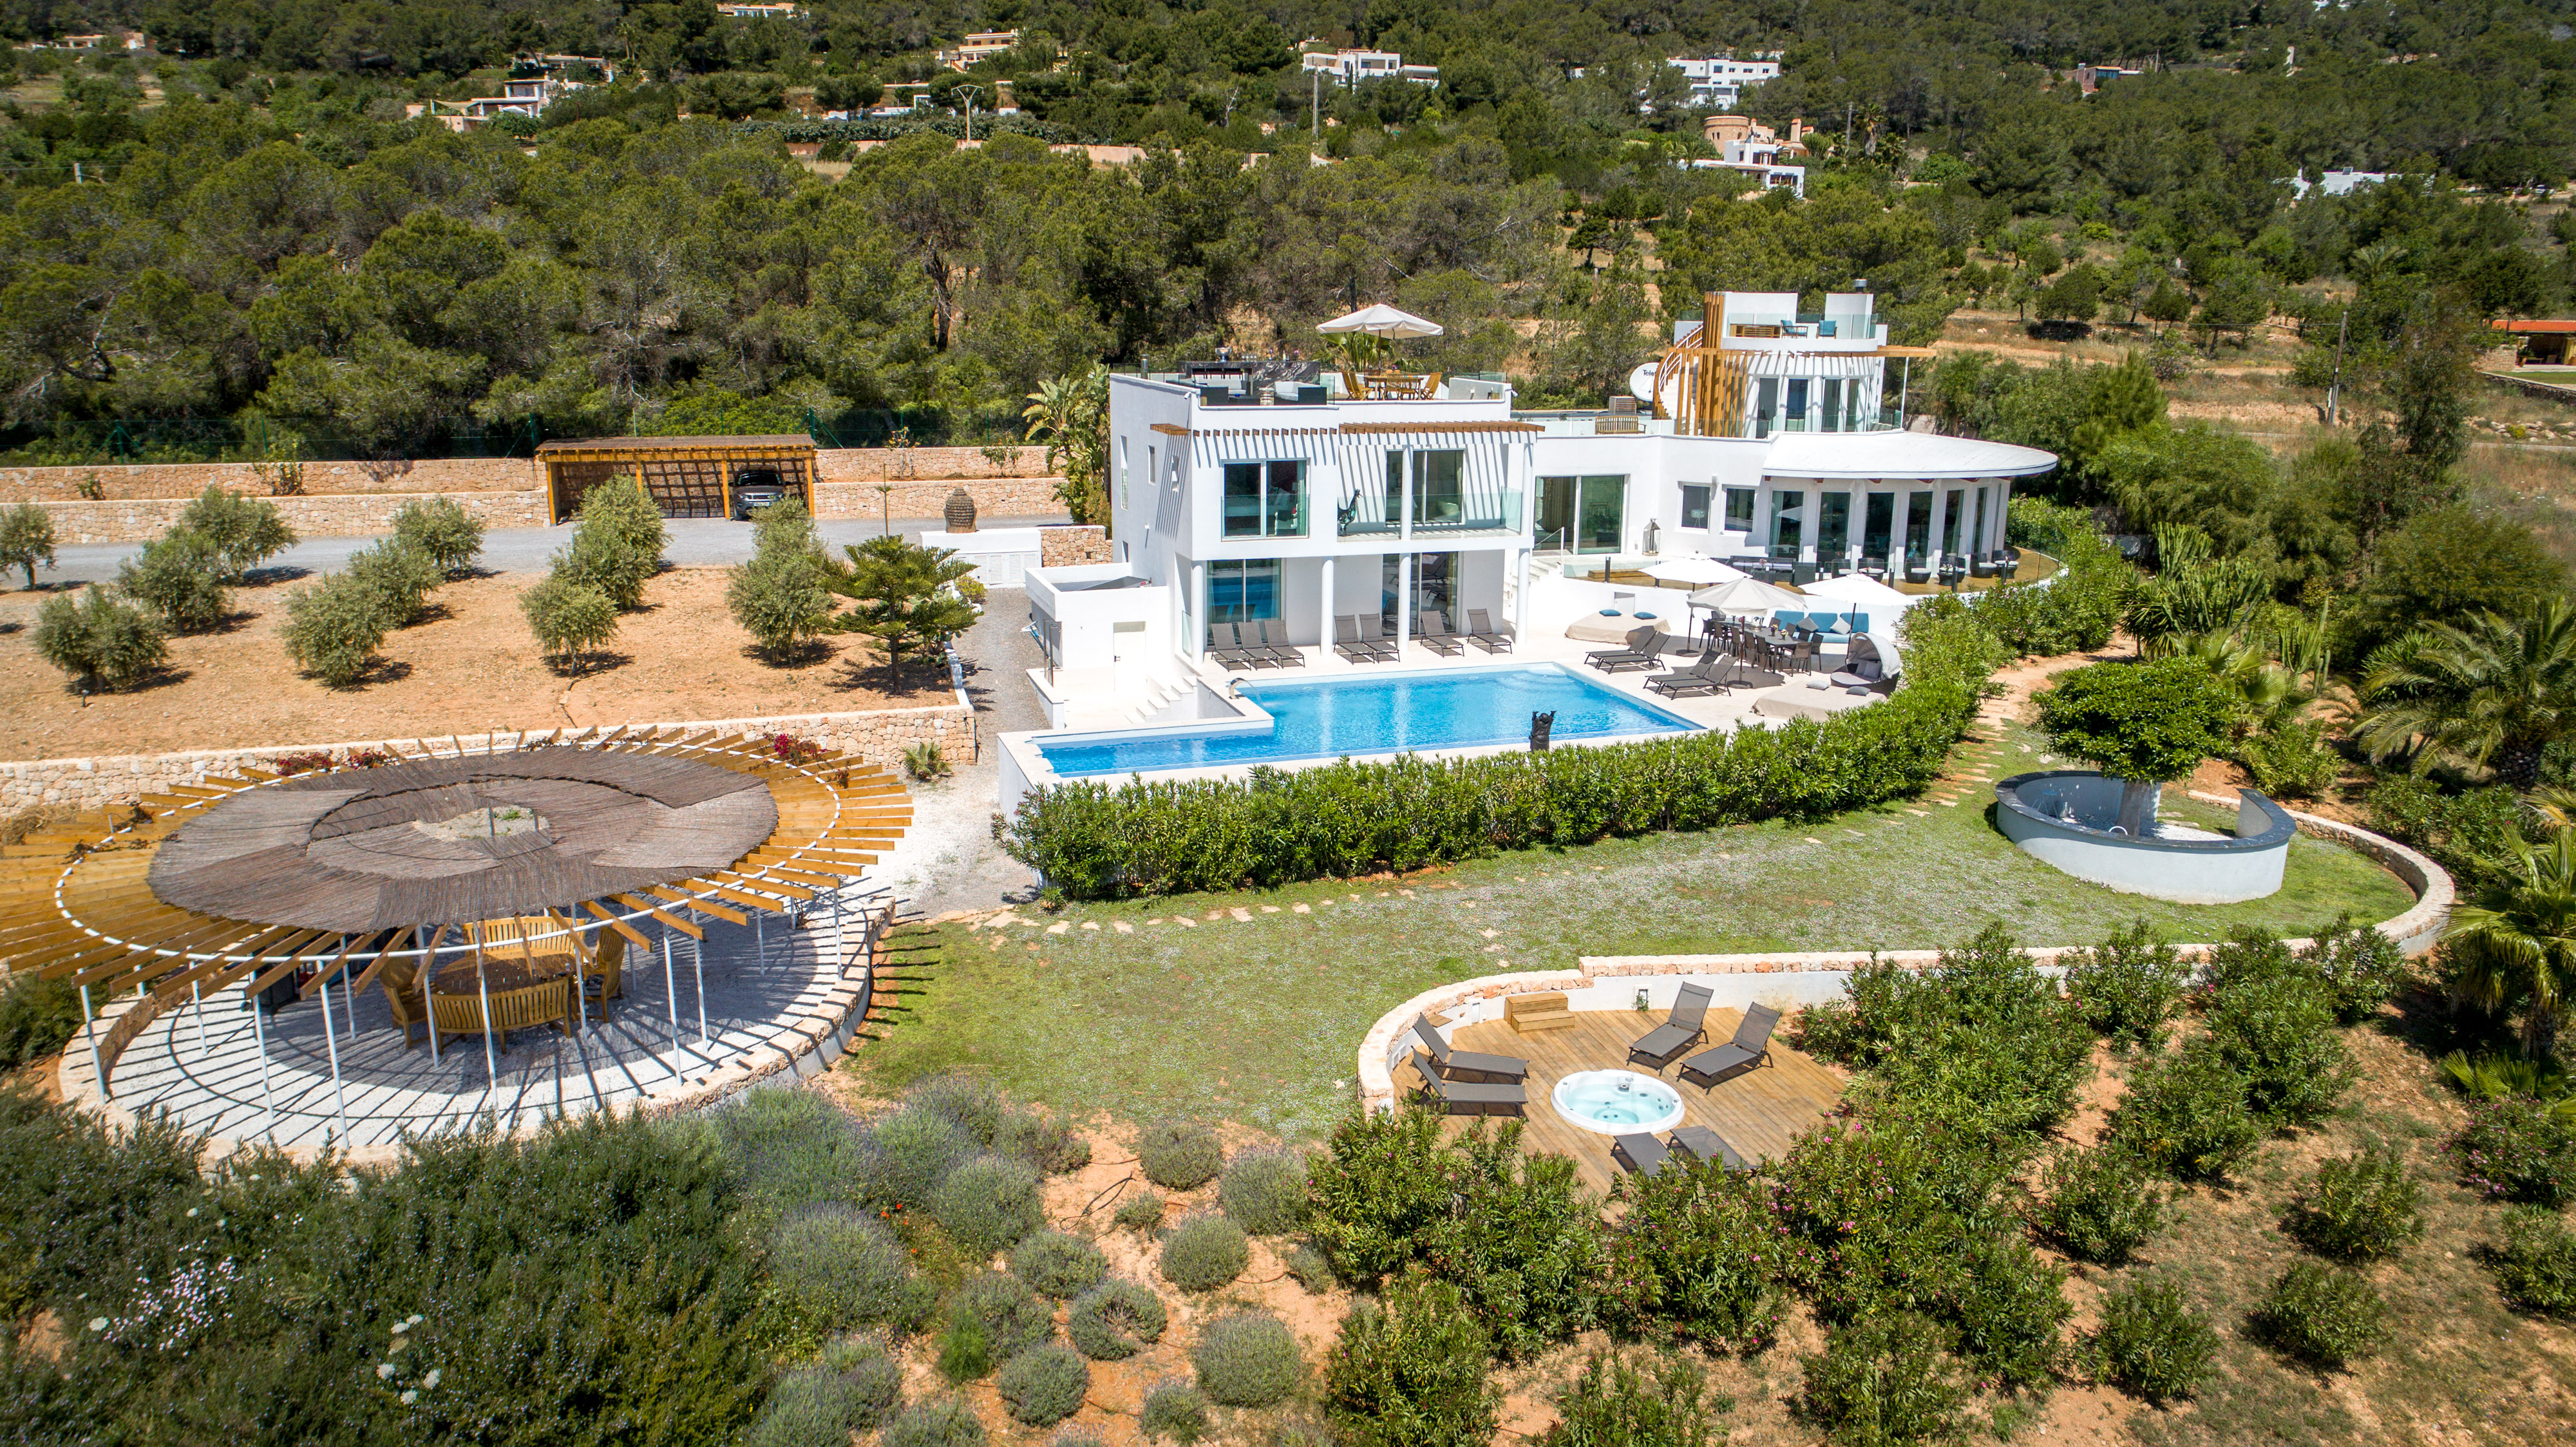 Mieten Sie im Oktober eine Villa auf Ibiza und genießen Sie eine Ruhige Zeit auf der Insel